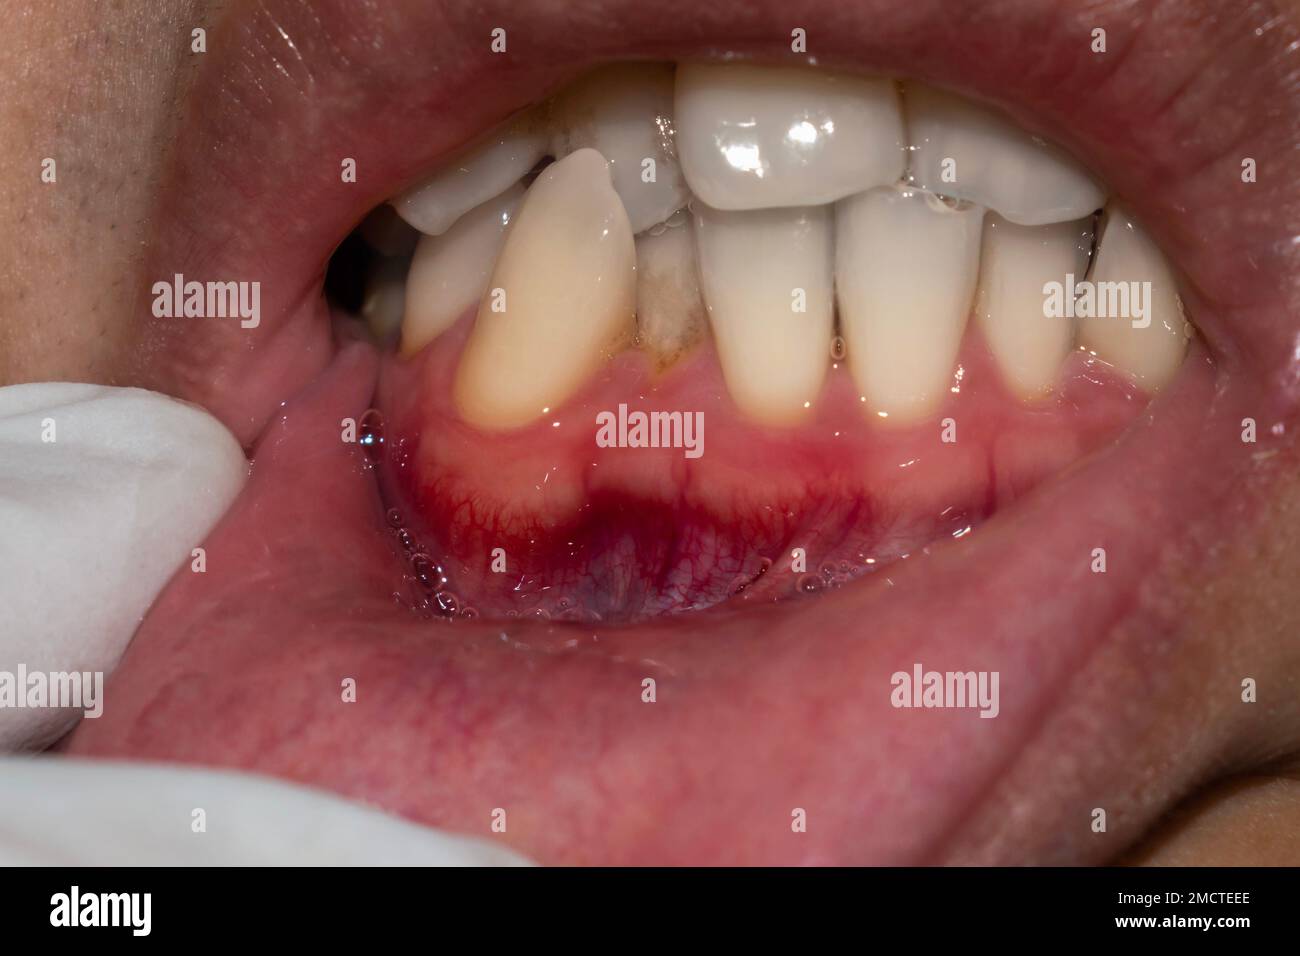 Infiammazione delle gengive chiamata gengivite. Problema parodontale. Scarsa igiene orale. Foto Stock